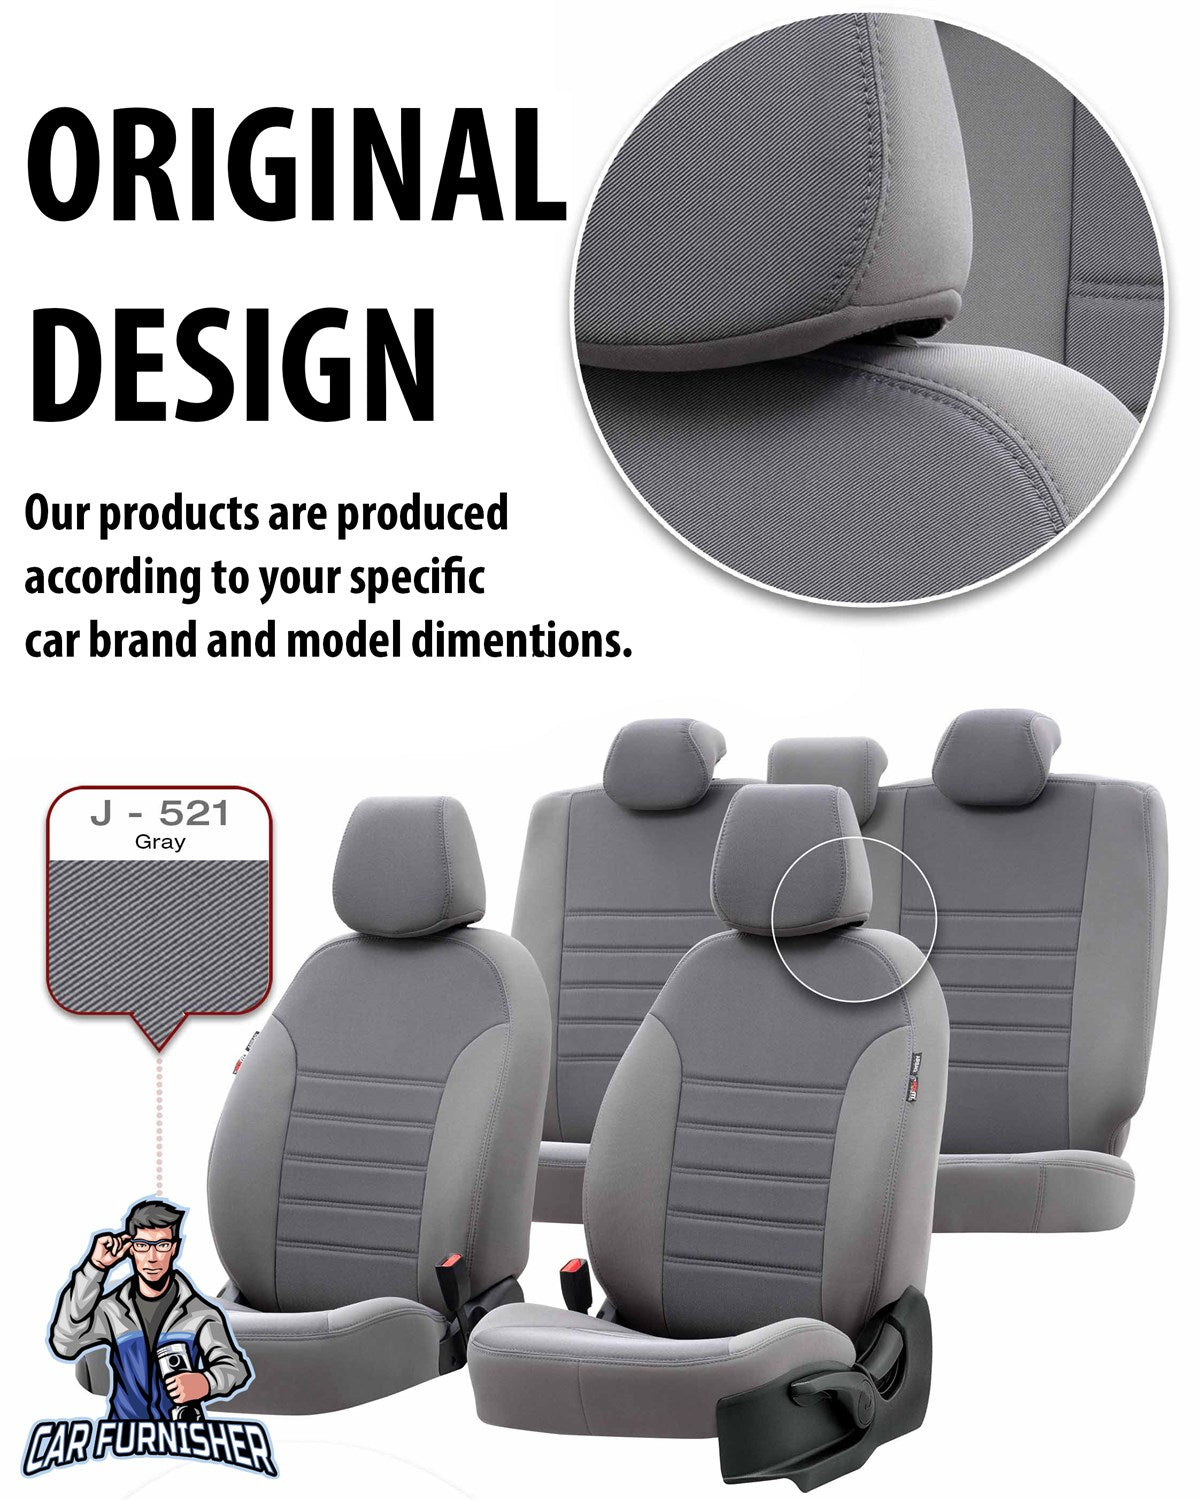 Kia Rio Seat Covers Original Jacquard Design Dark Gray Jacquard Fabric